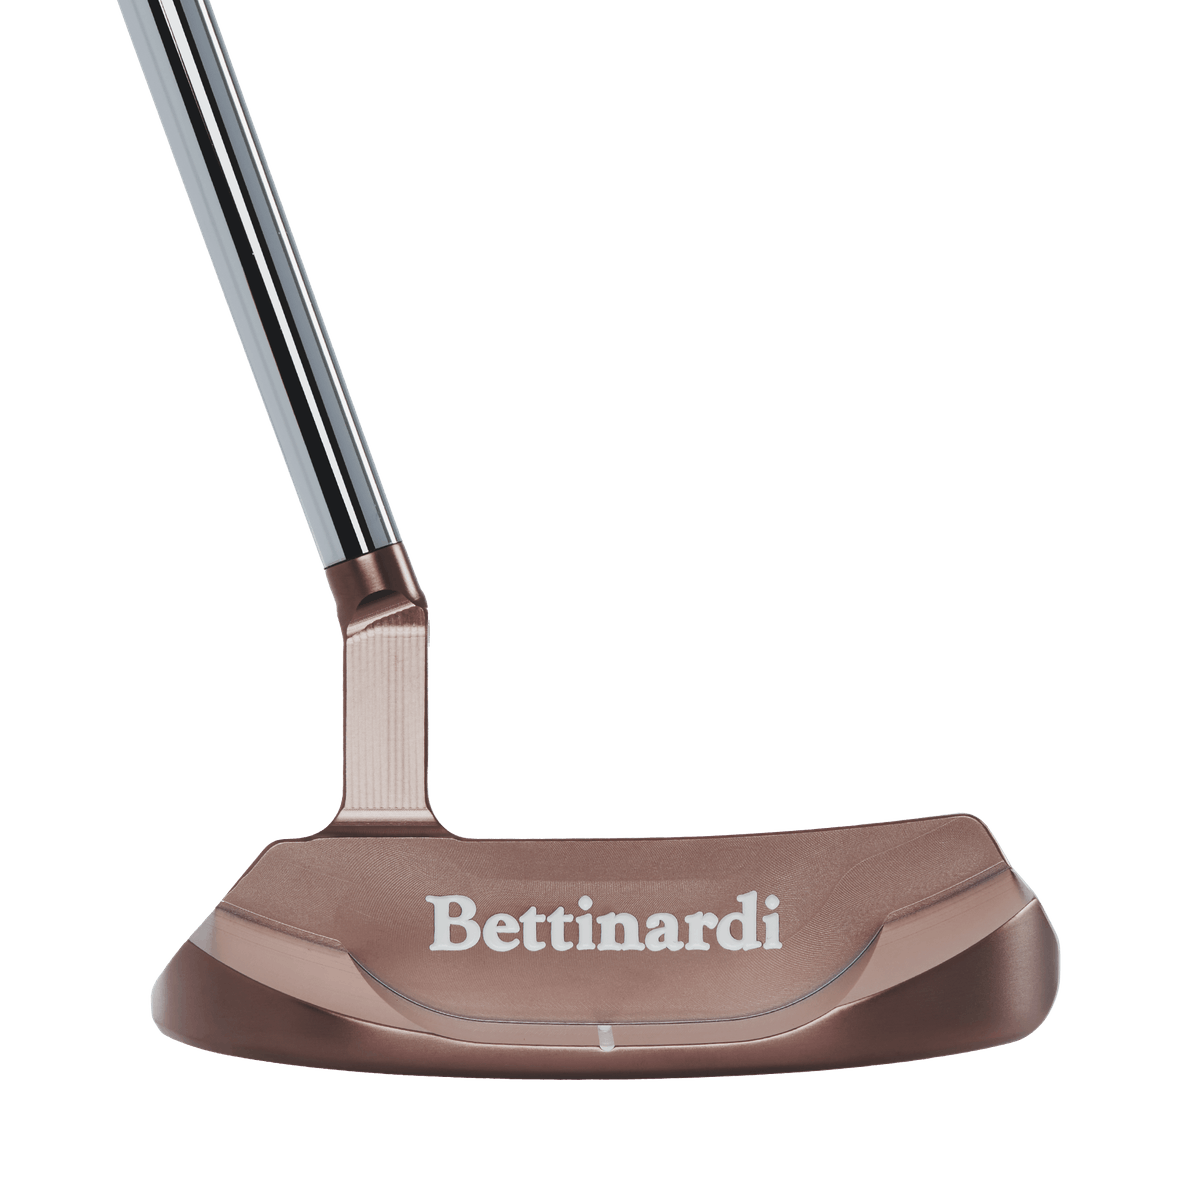 Bettinardi 2023 Queen B14 Putter · Right Handed · Standard · 34 · Copper